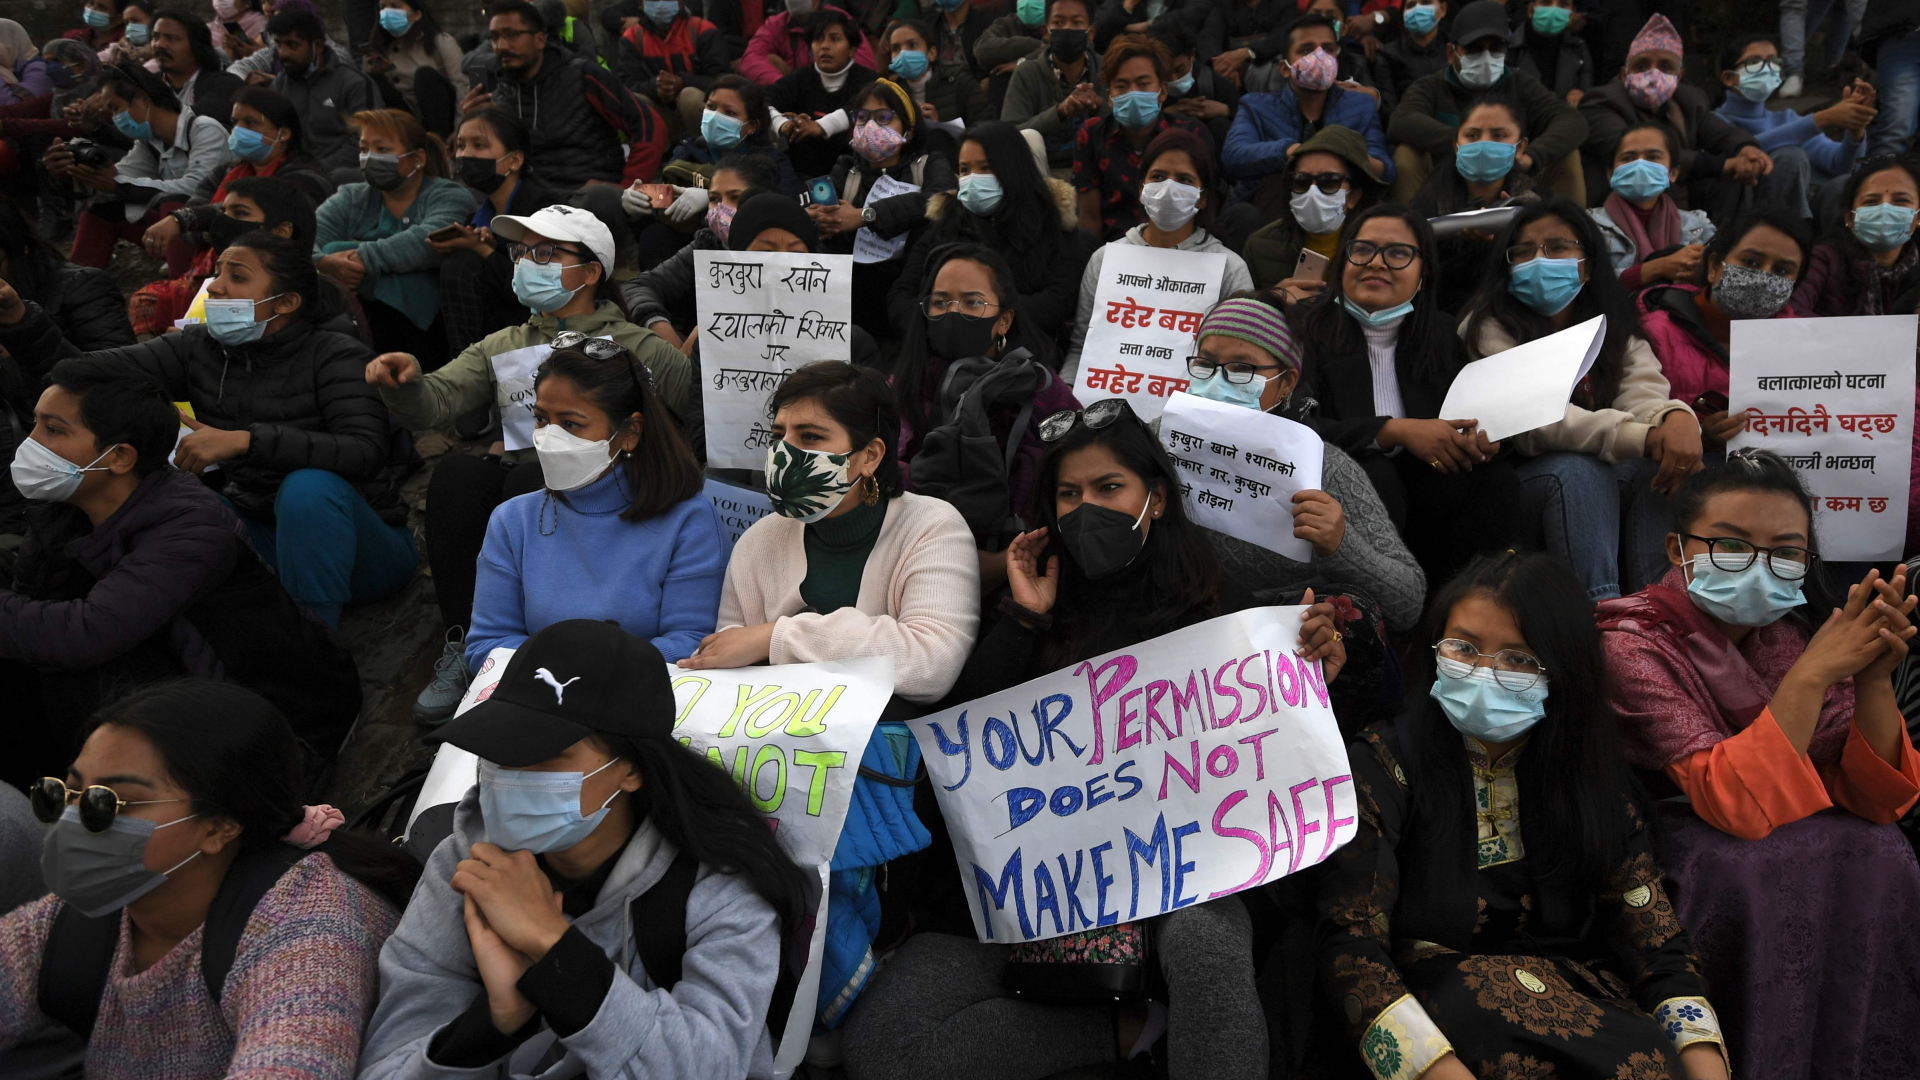 Frauen demonstrieren in Kathmandu gegen geplante Reisebeschränkungen und gegen Gewalt | AFP